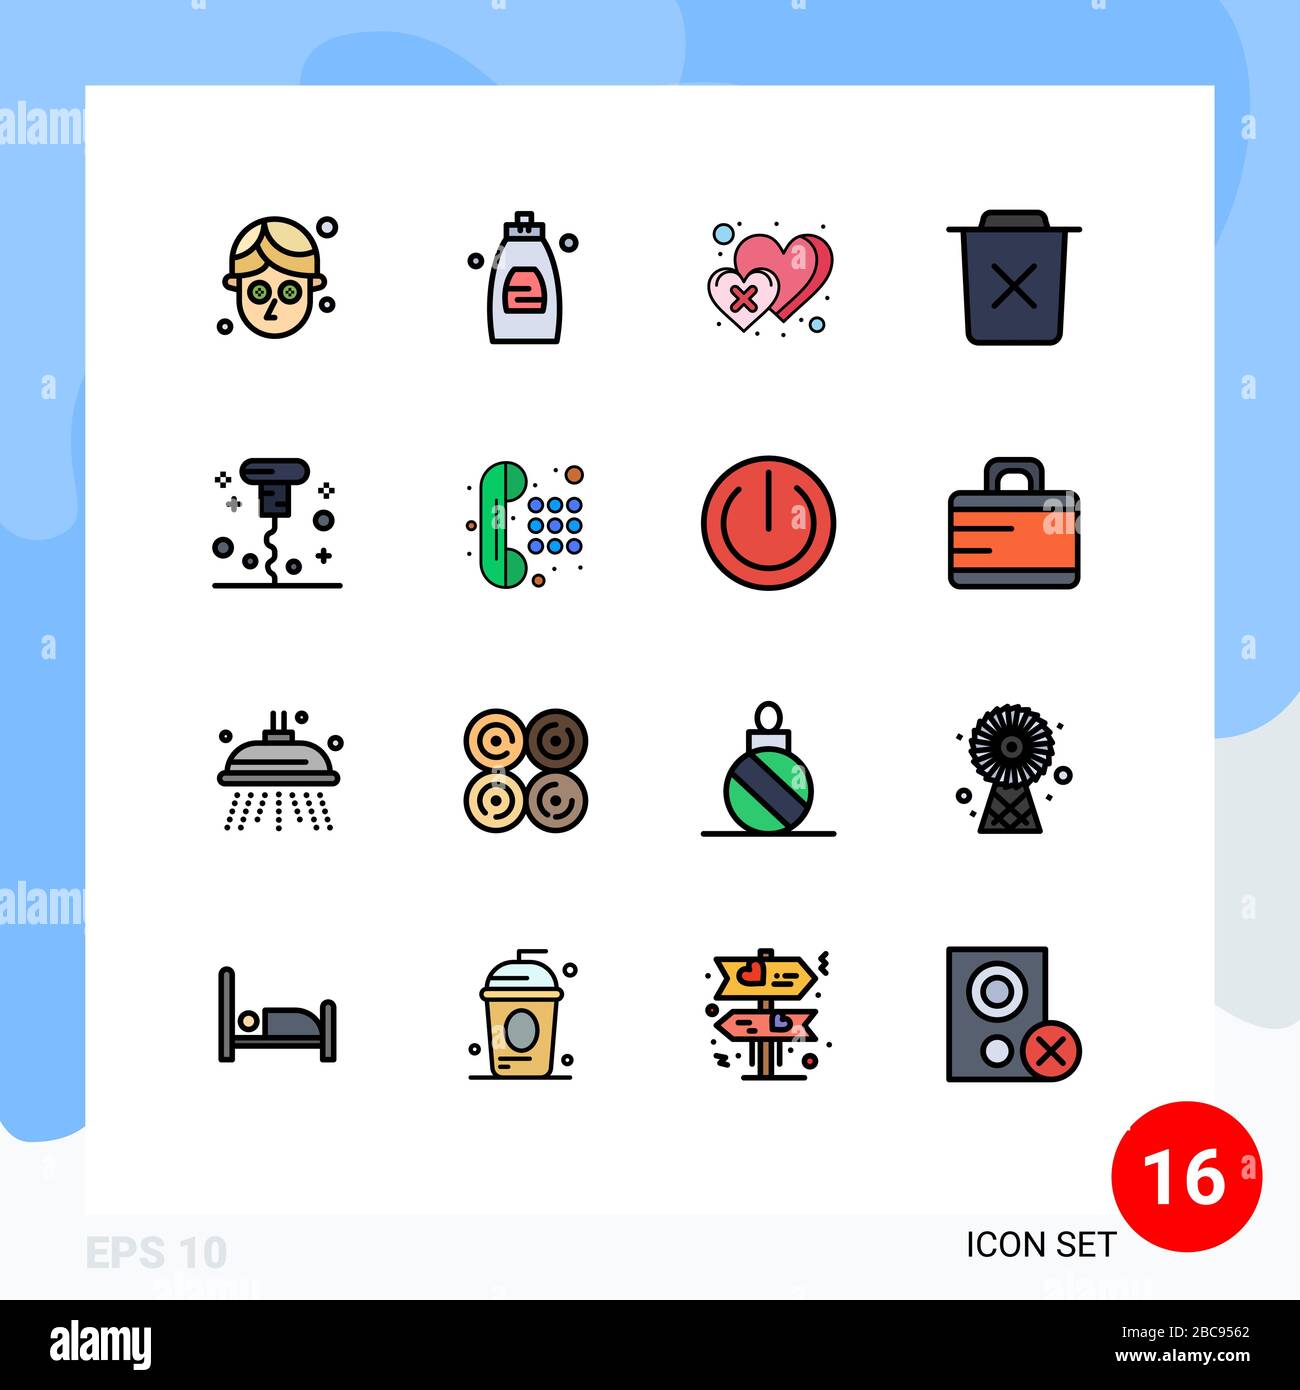 16 icone creative segni e simboli moderni di cavatappi, cestino, cuore, rimuovere, bin Editable Creative Vector Design Elements Illustrazione Vettoriale